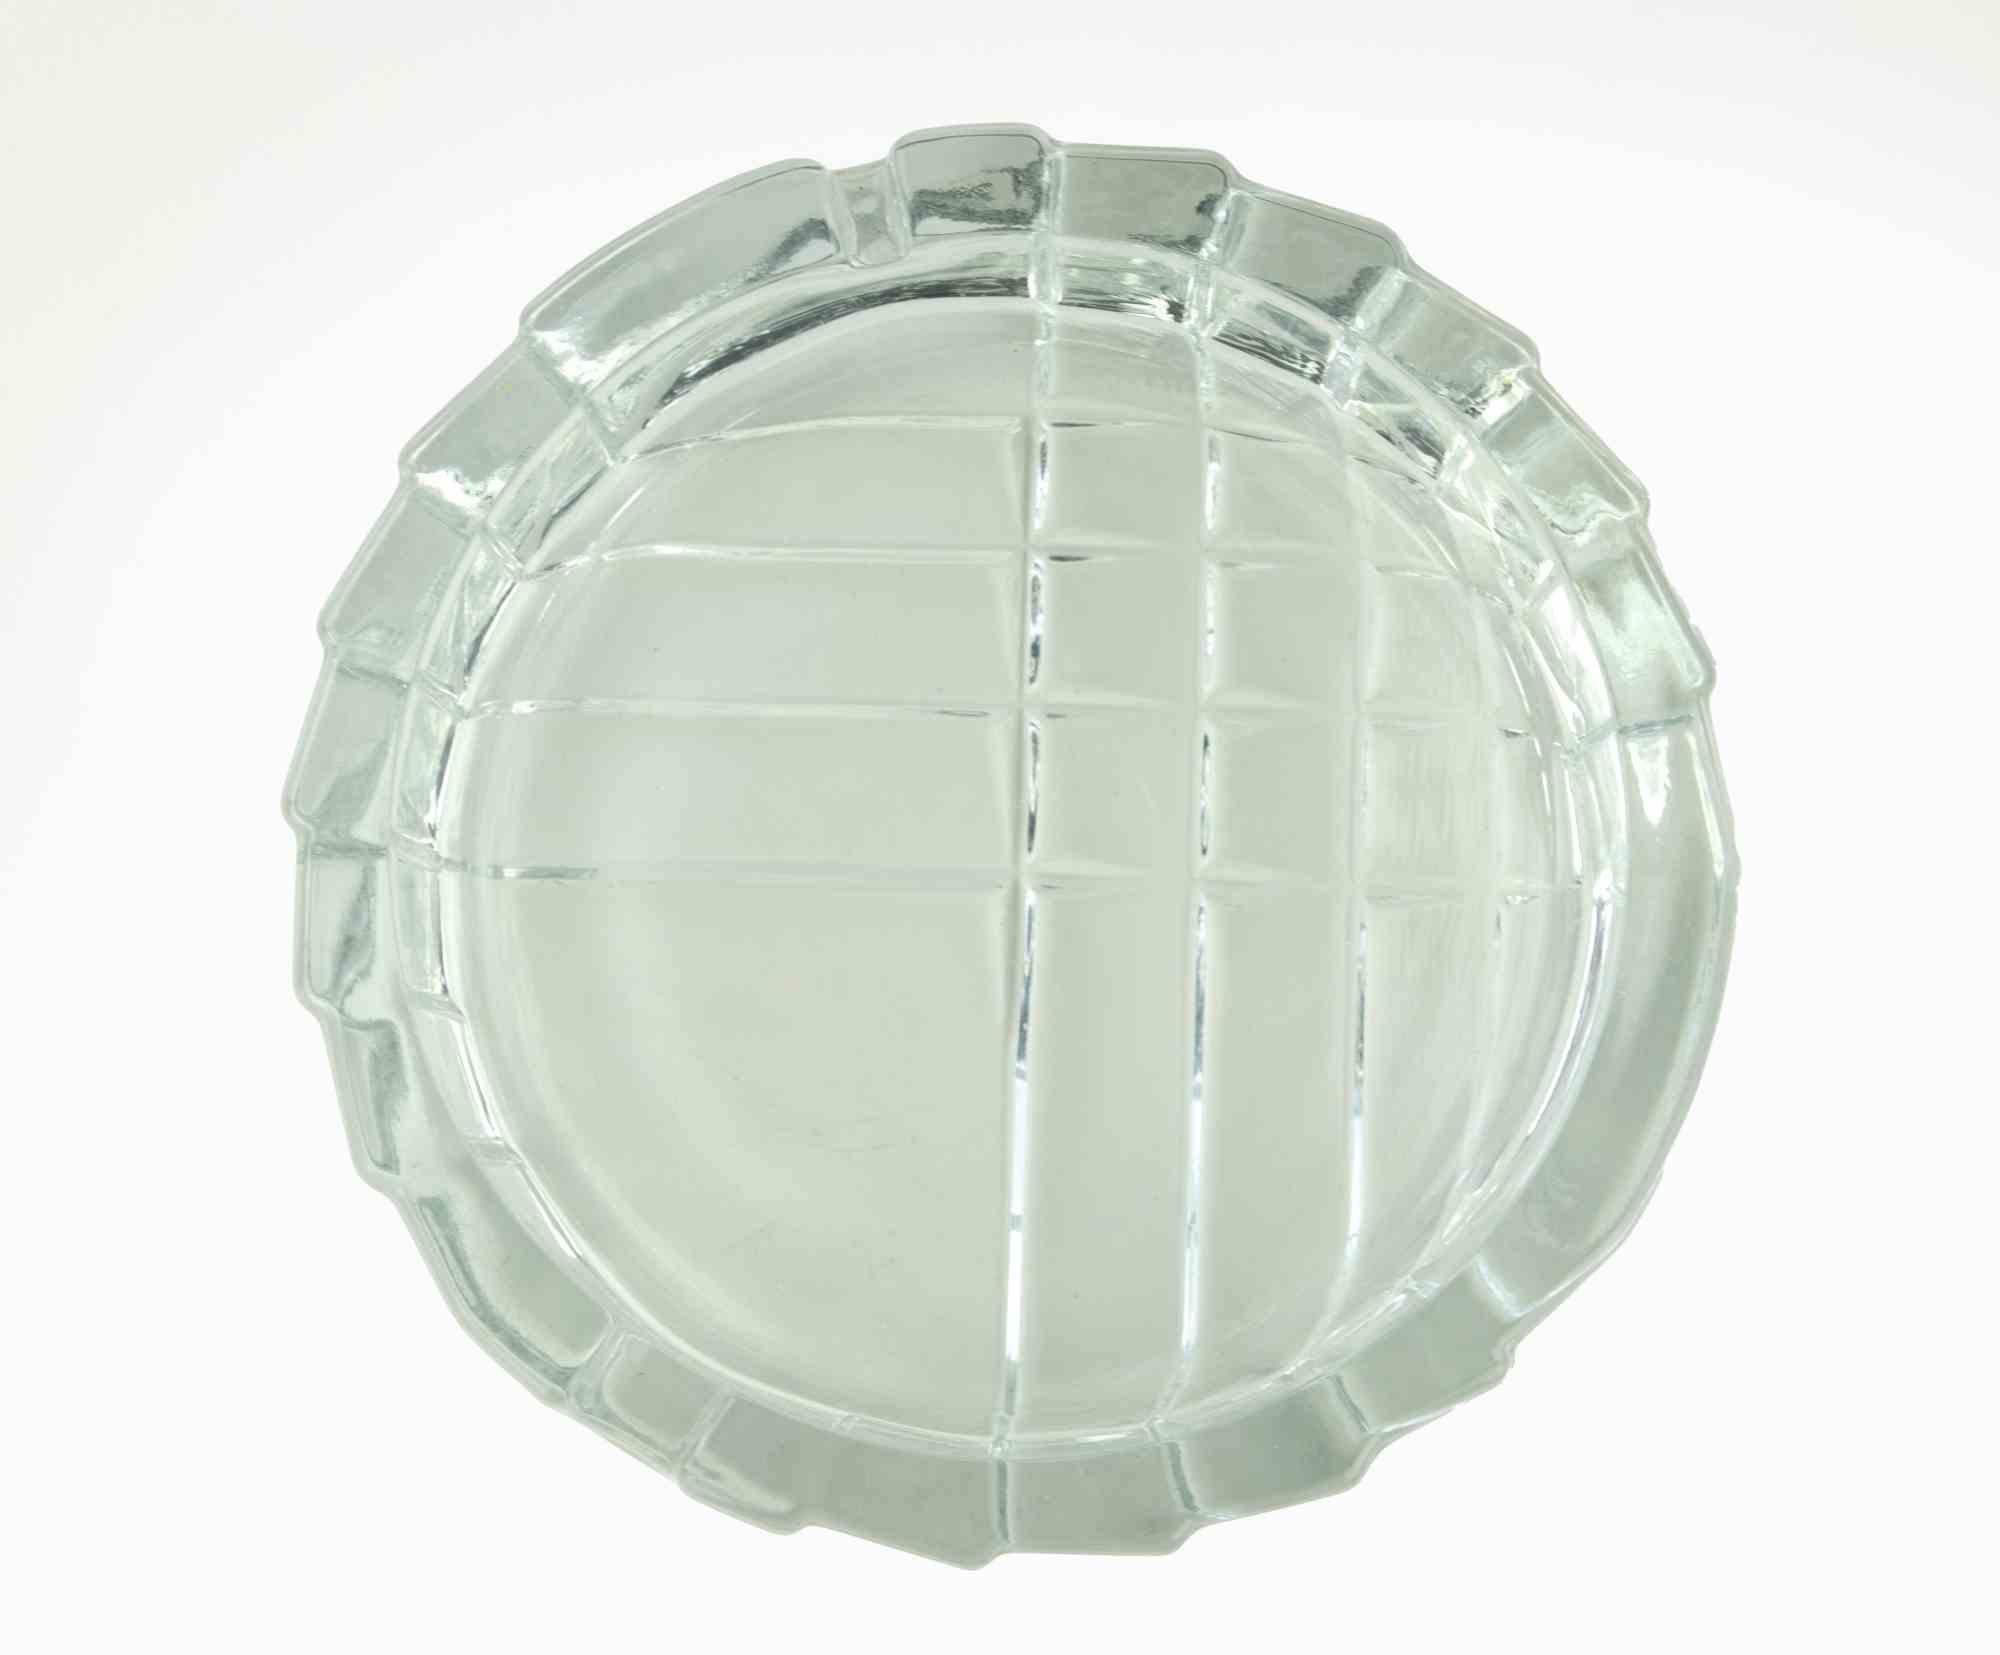 Der Aschenbecher aus Glas ist ein Objekt aus den 1970er Jahren.

Kunstglas, D 15 x 4 cm.

Sehr gute Bedingungen!